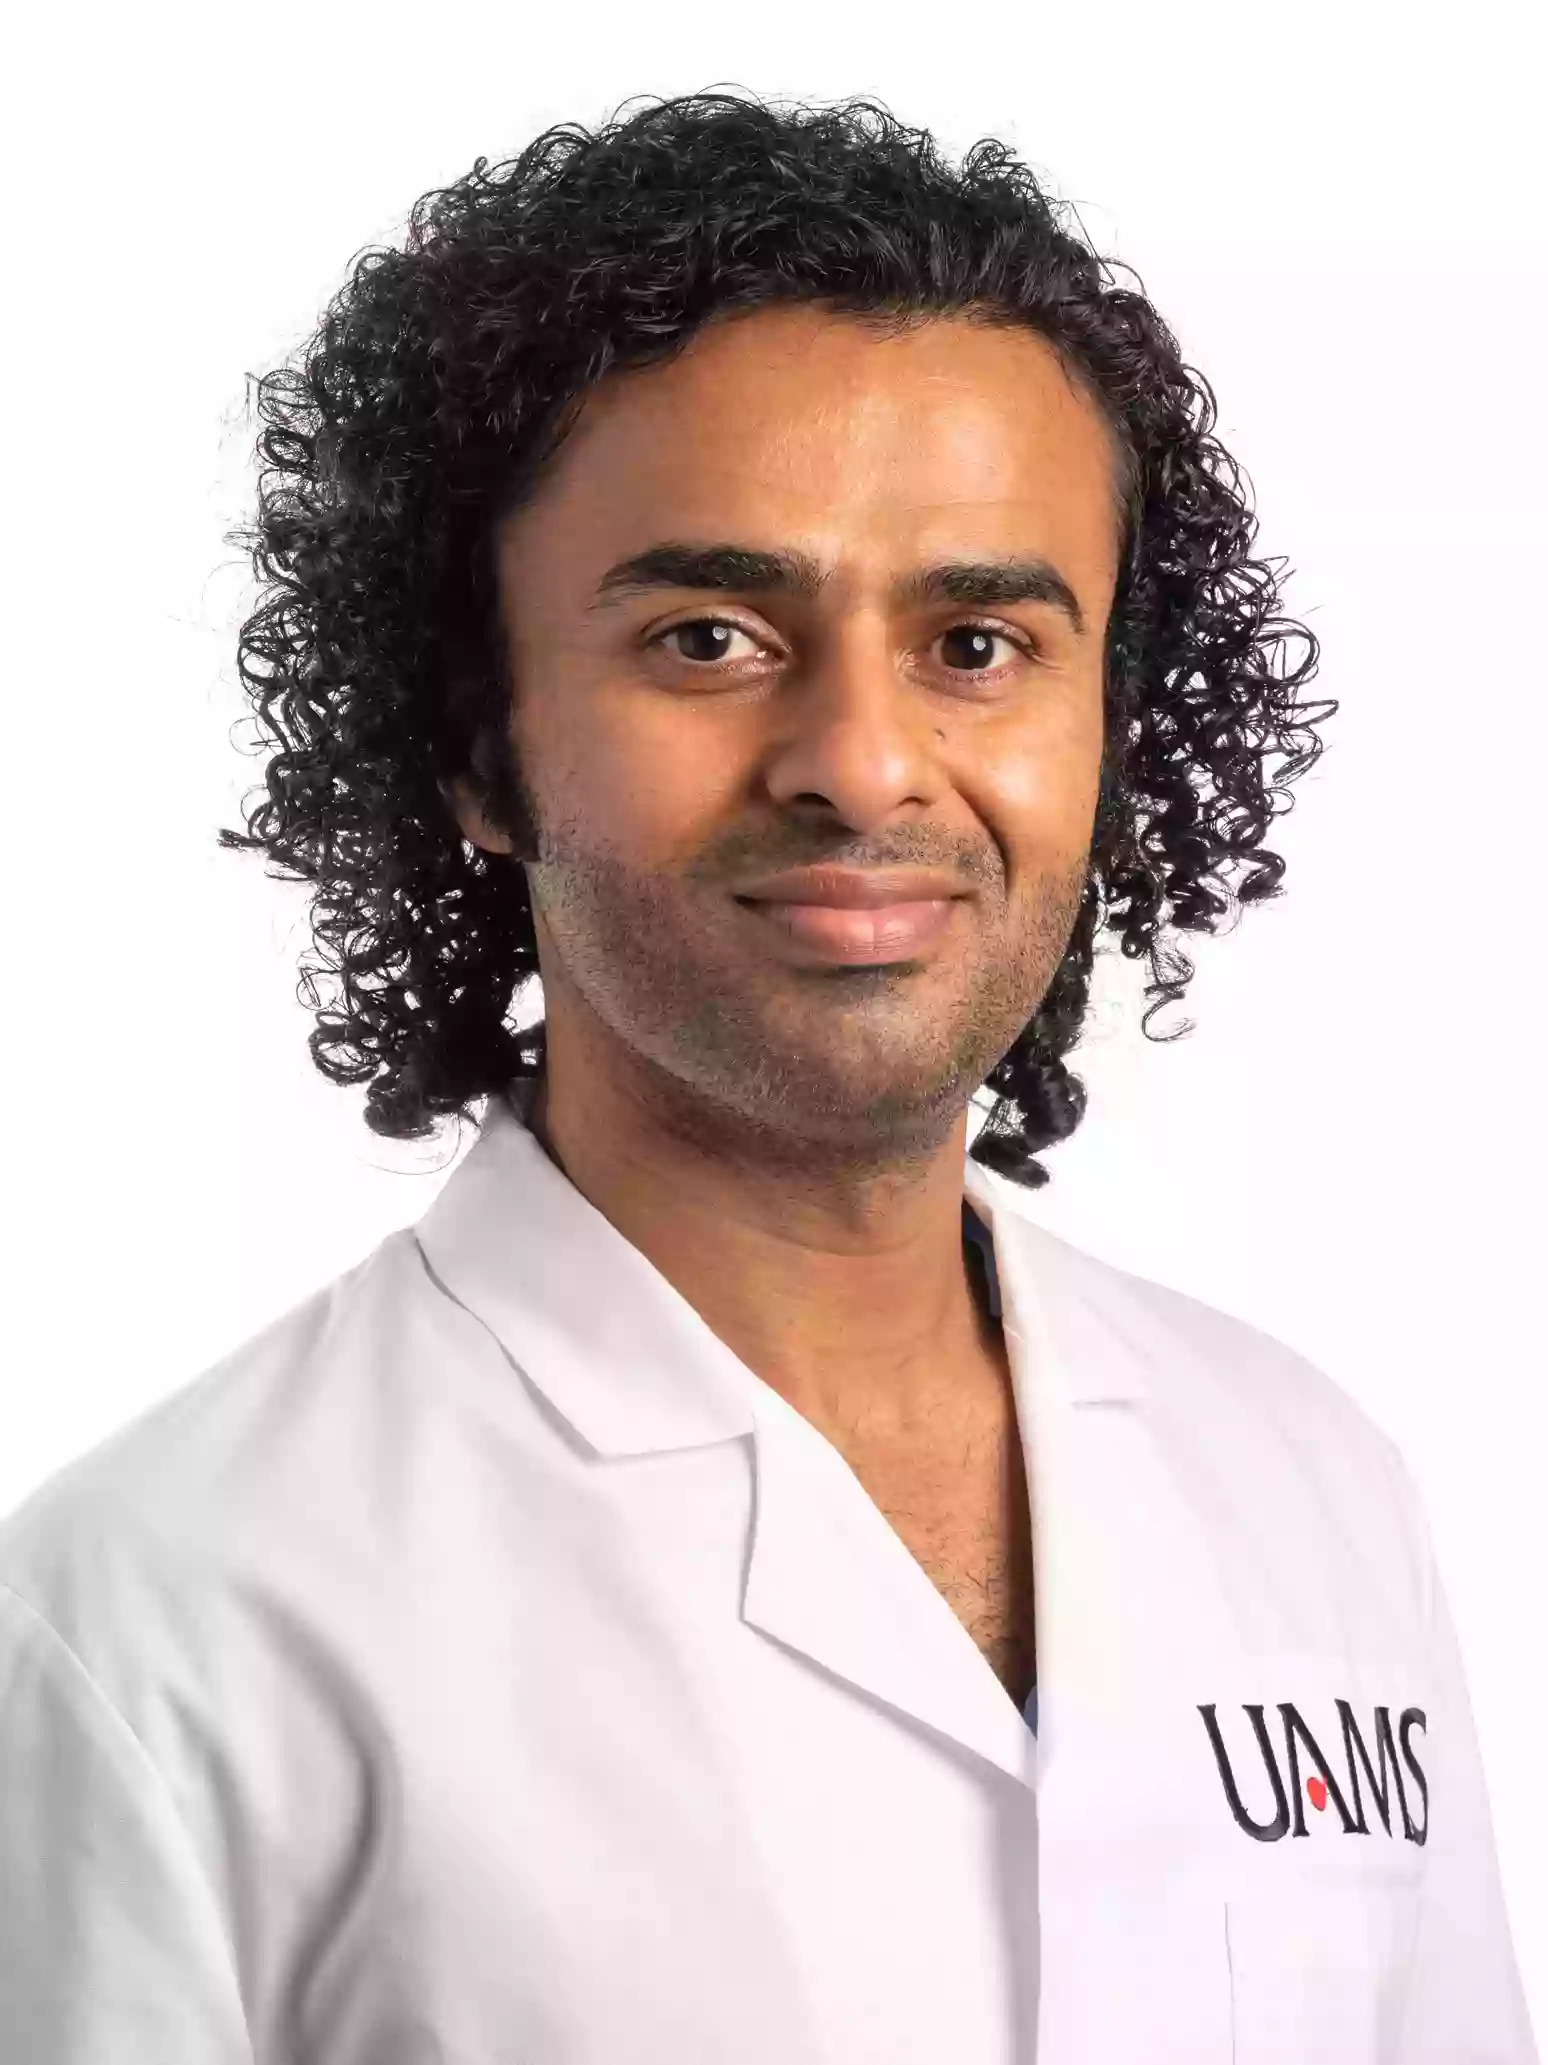 UAMS Health - Vikas Chowdhary, M.D.